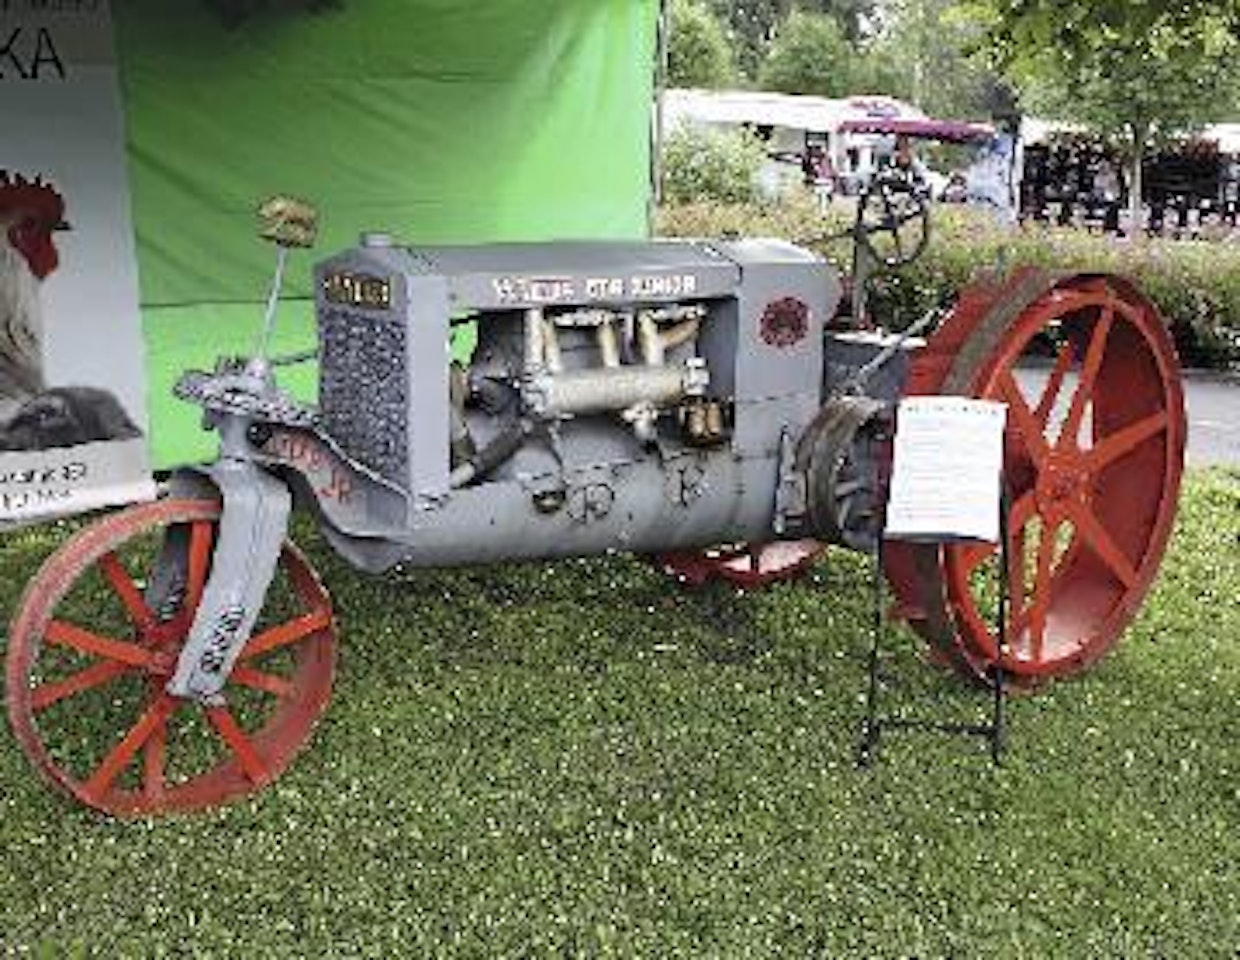 Wallis oli ensimmäinen traktori, jossa oli itsekantava valurunko. Ensimmäiset kappaleet tehtiin vuonna 1914, jatkossa uudenlaista rakennetta hyödynsivät muun muassa Fordson ja Deering. 25-hevosvoimaista, 1,5 tonnia painavaa Wallis Cub Junioria on tuotu Suomeen tämän hetkisten tietojen mukaan ainakin neljä kappaletta. (Seinäjoki)